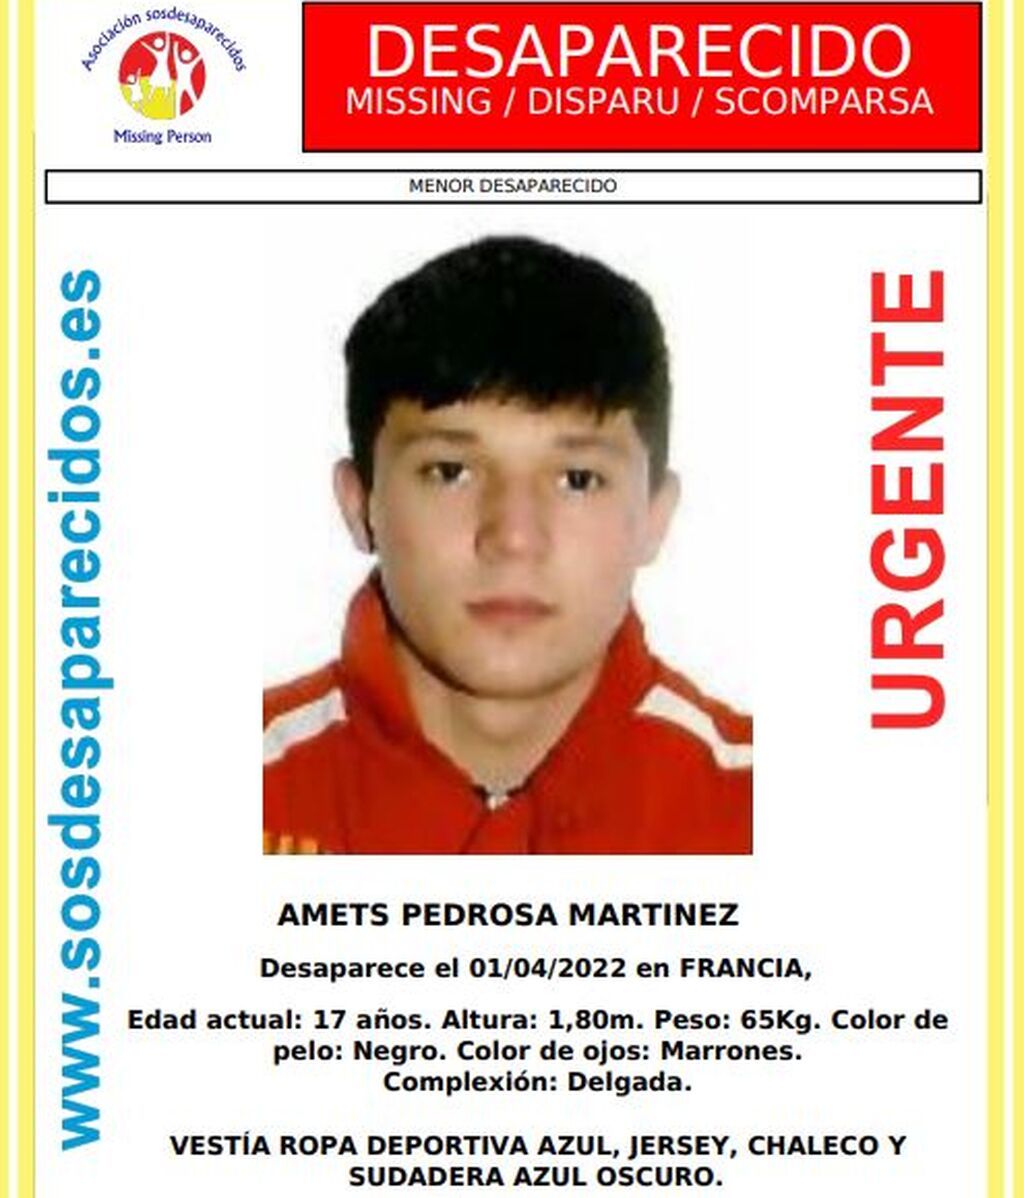 Amets Pedrosa Martínez, de 17 años, menor desaparecido en Francia